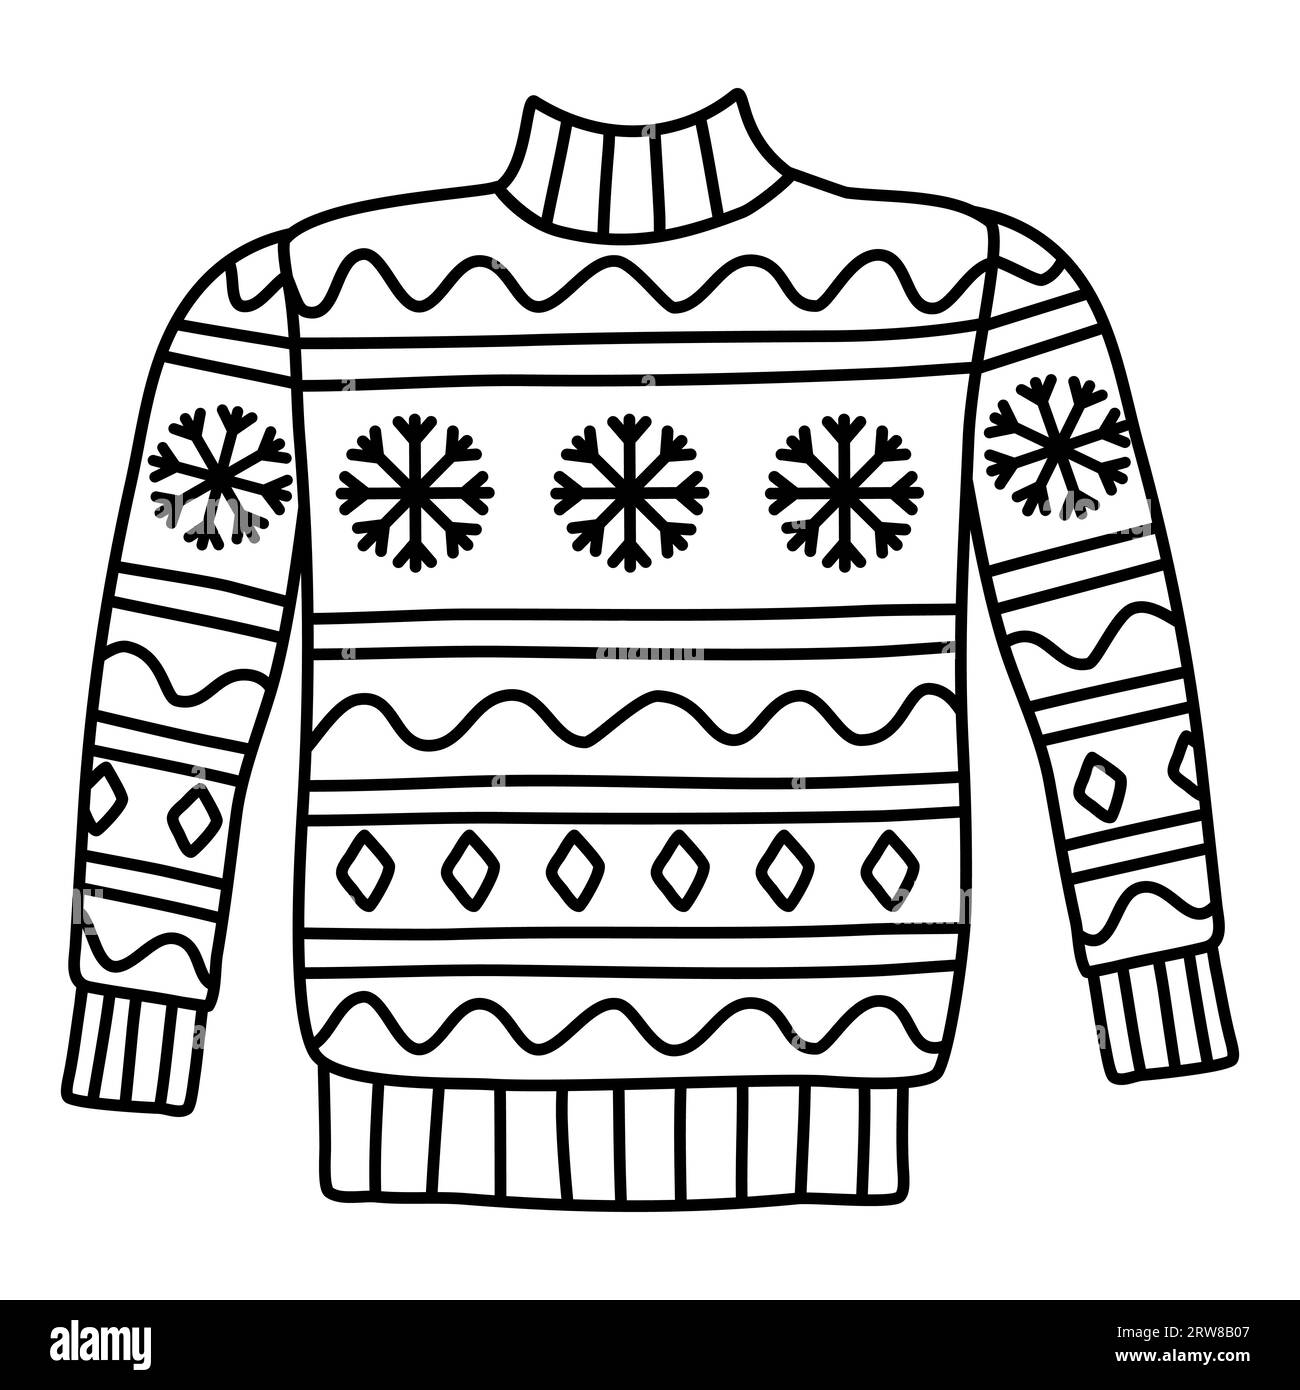 Warmer Strickpullover mit Schneeflocken und geometrischem Muster, Doodle-Stil flache Vektor-Umrissillustration für Kinder Malbuch Stock Vektor